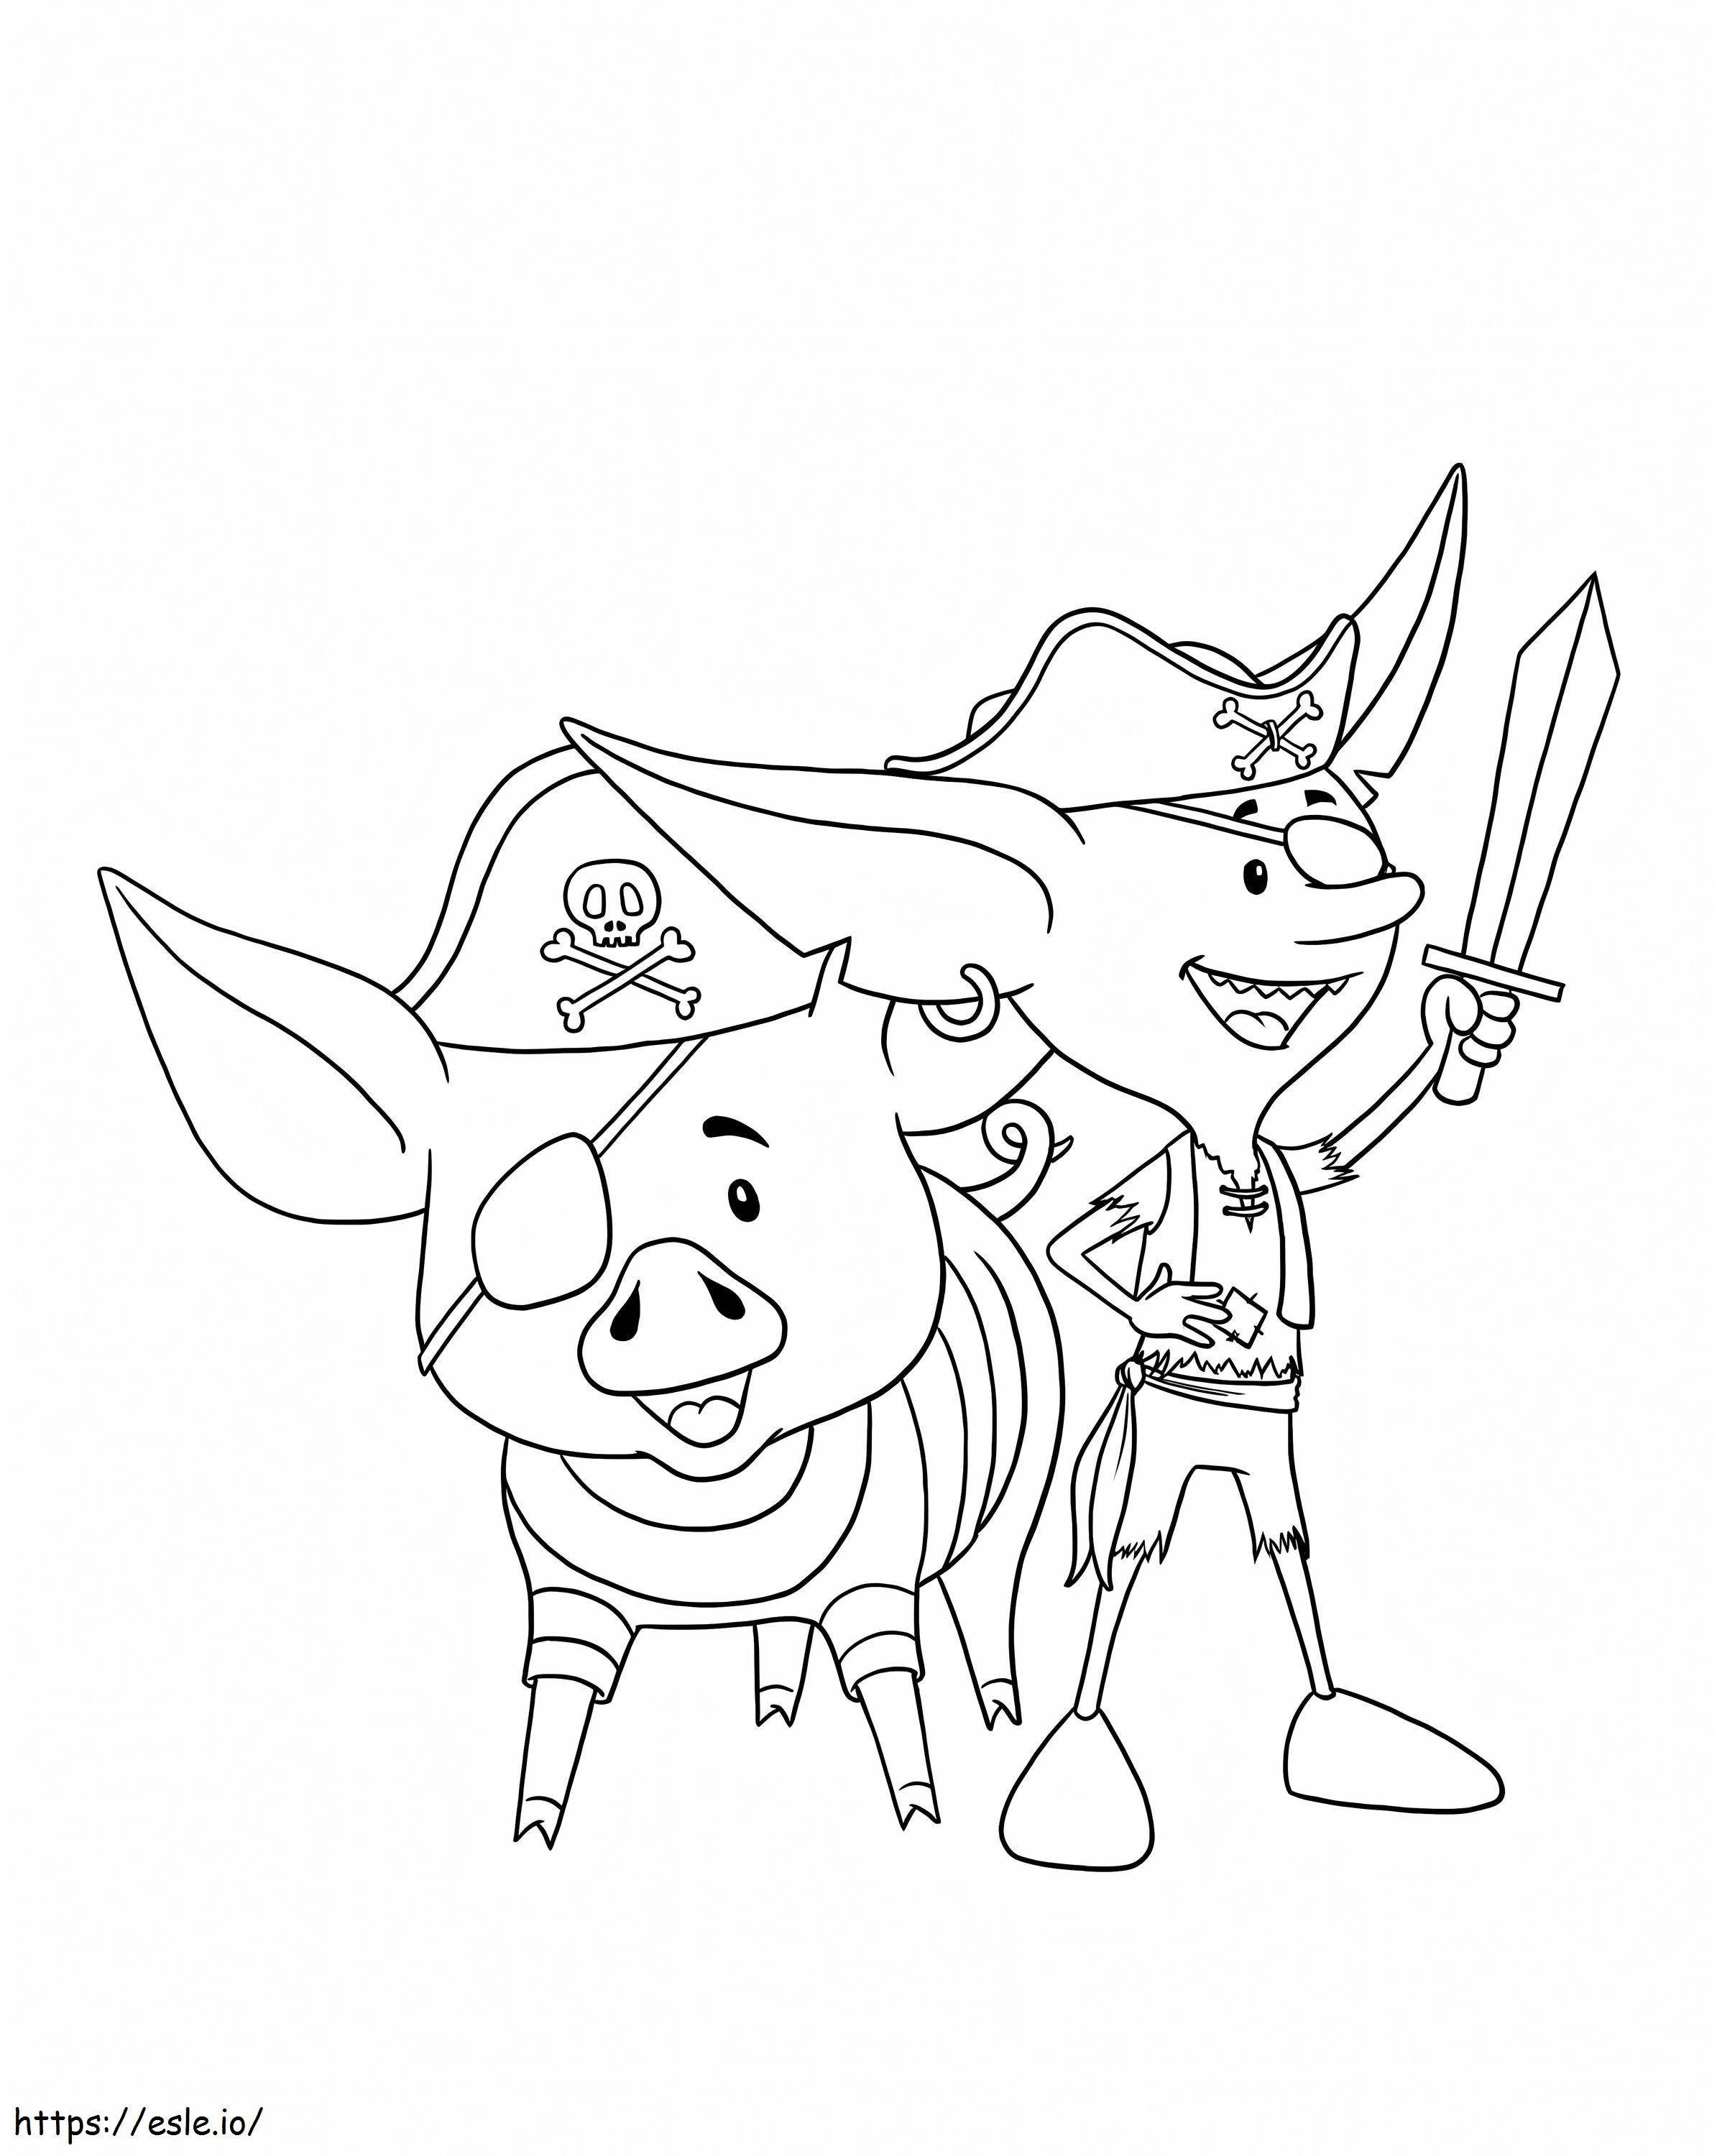 Leprechaun e porco como piratas para colorir